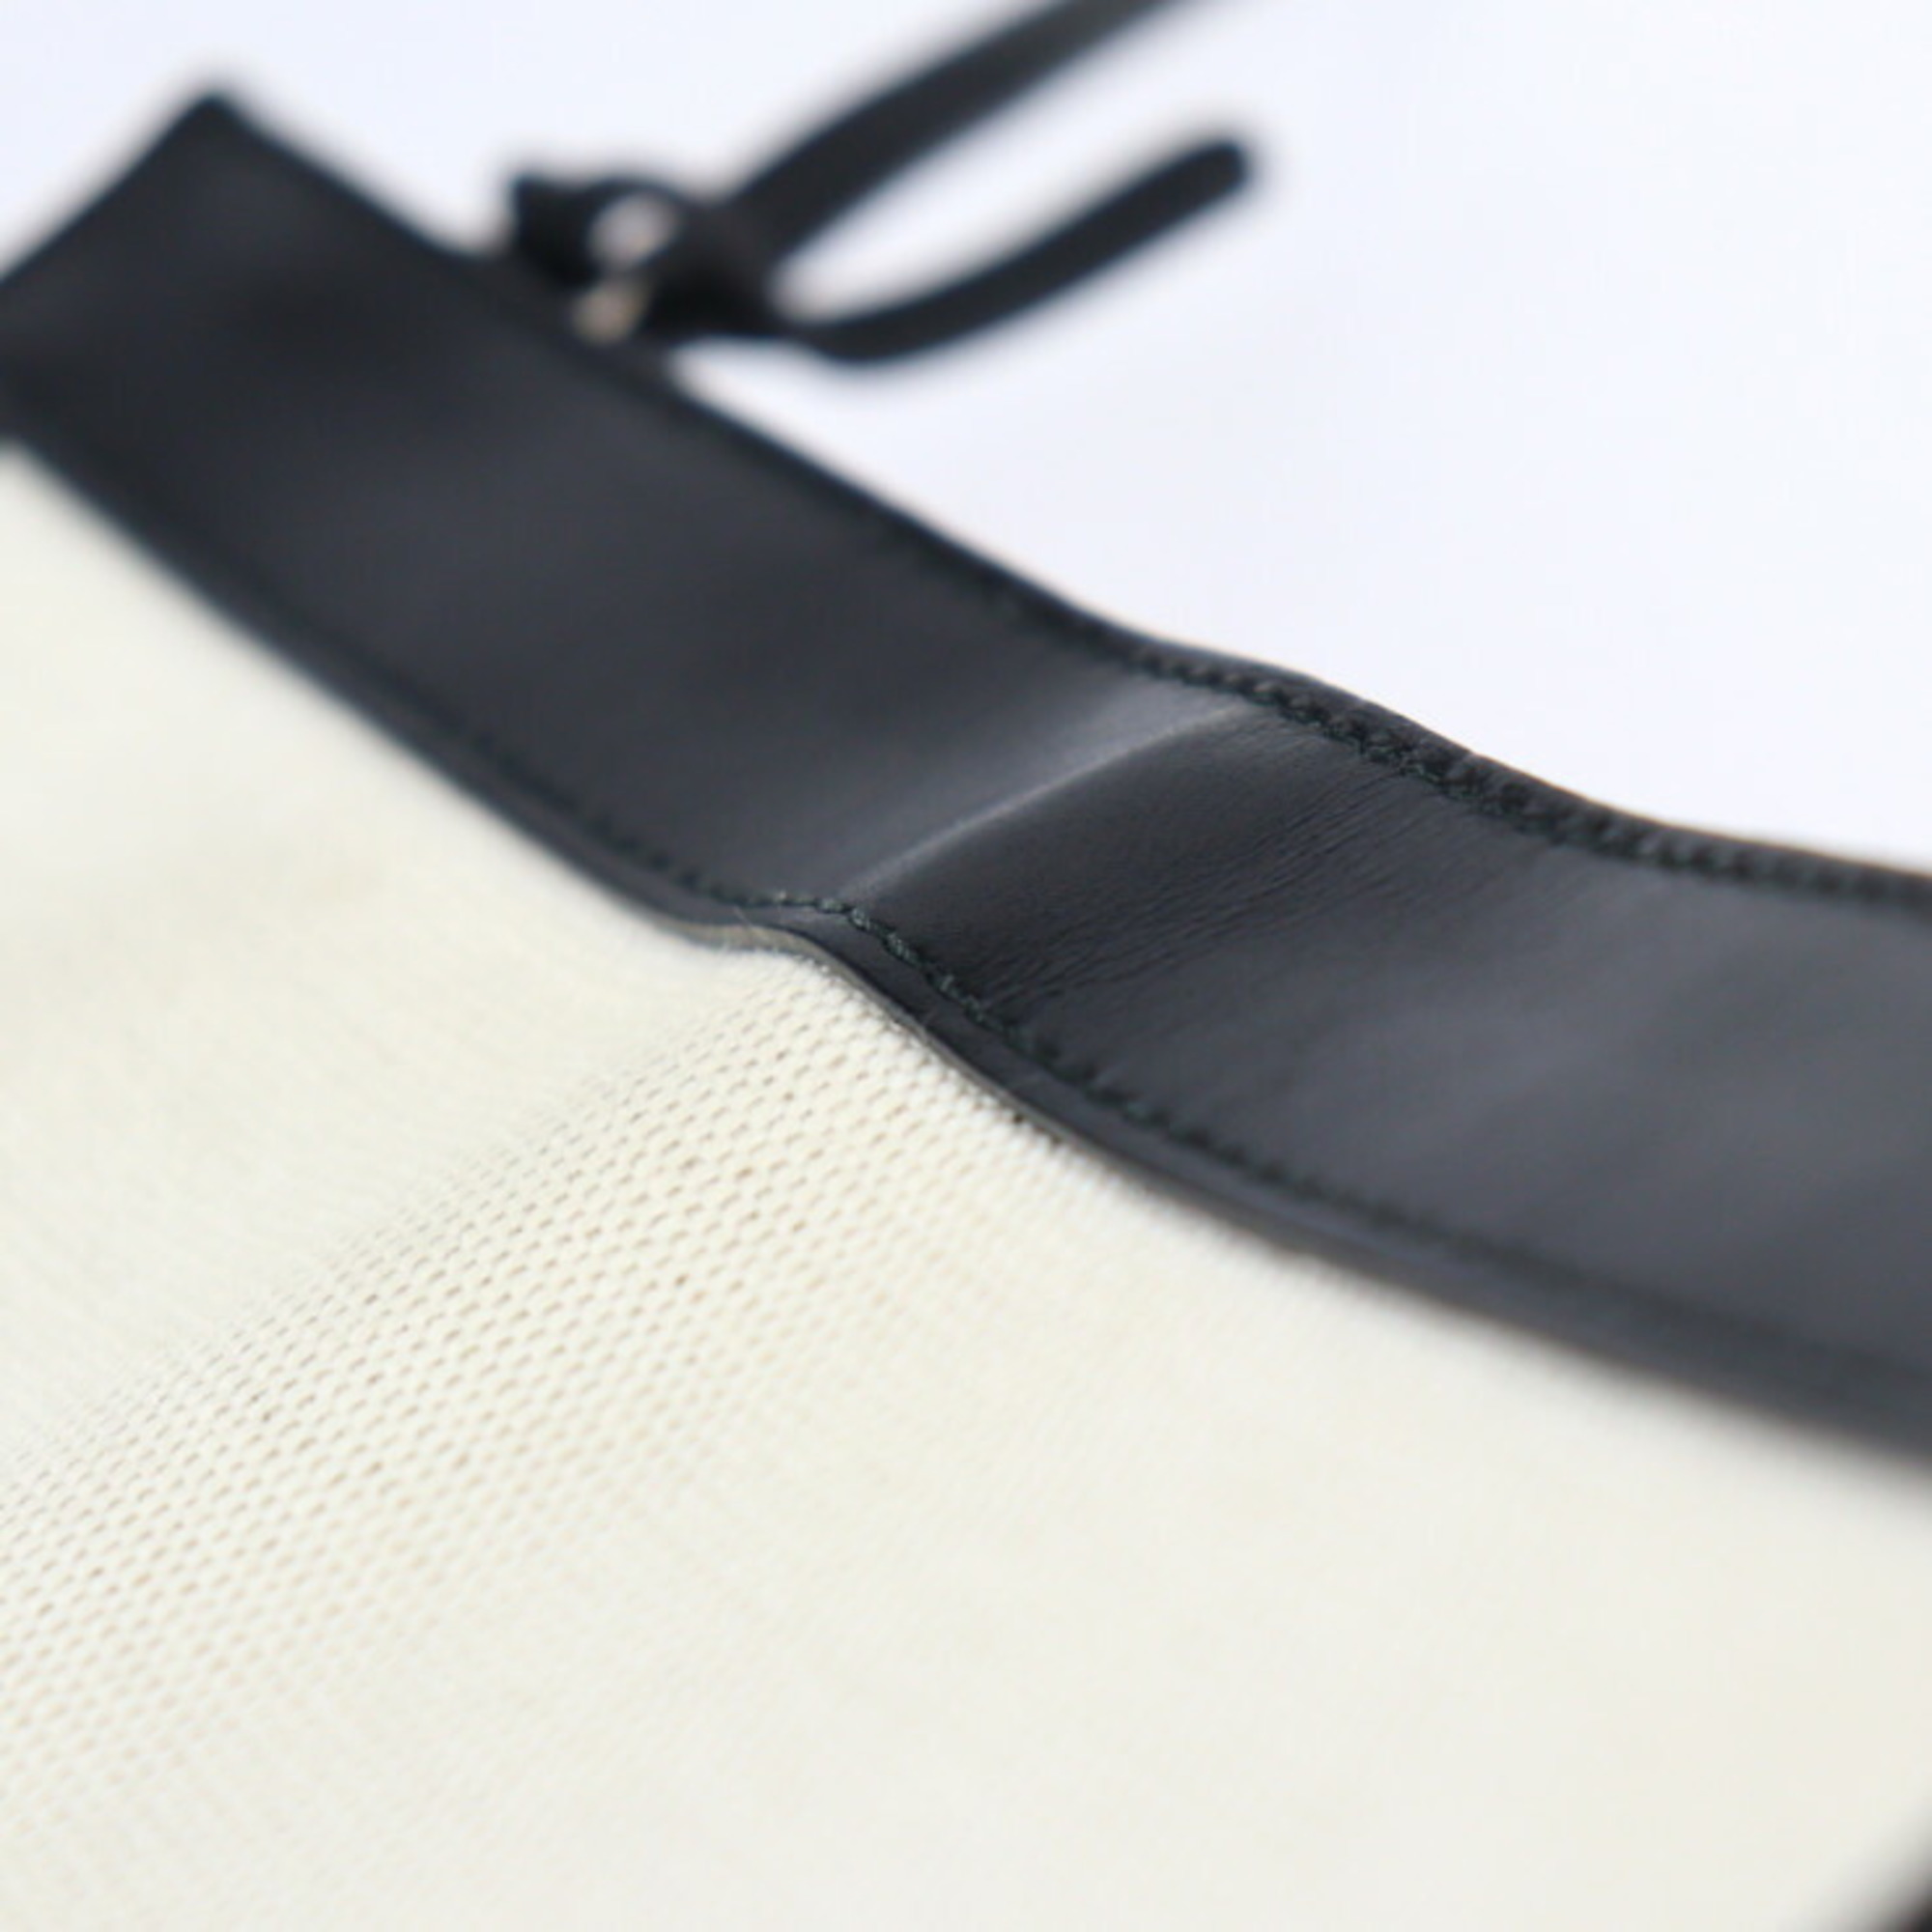 BALENCIAGA Balenciaga navy pochette shoulder bag 339937 canvas leather natural black 2WAY second